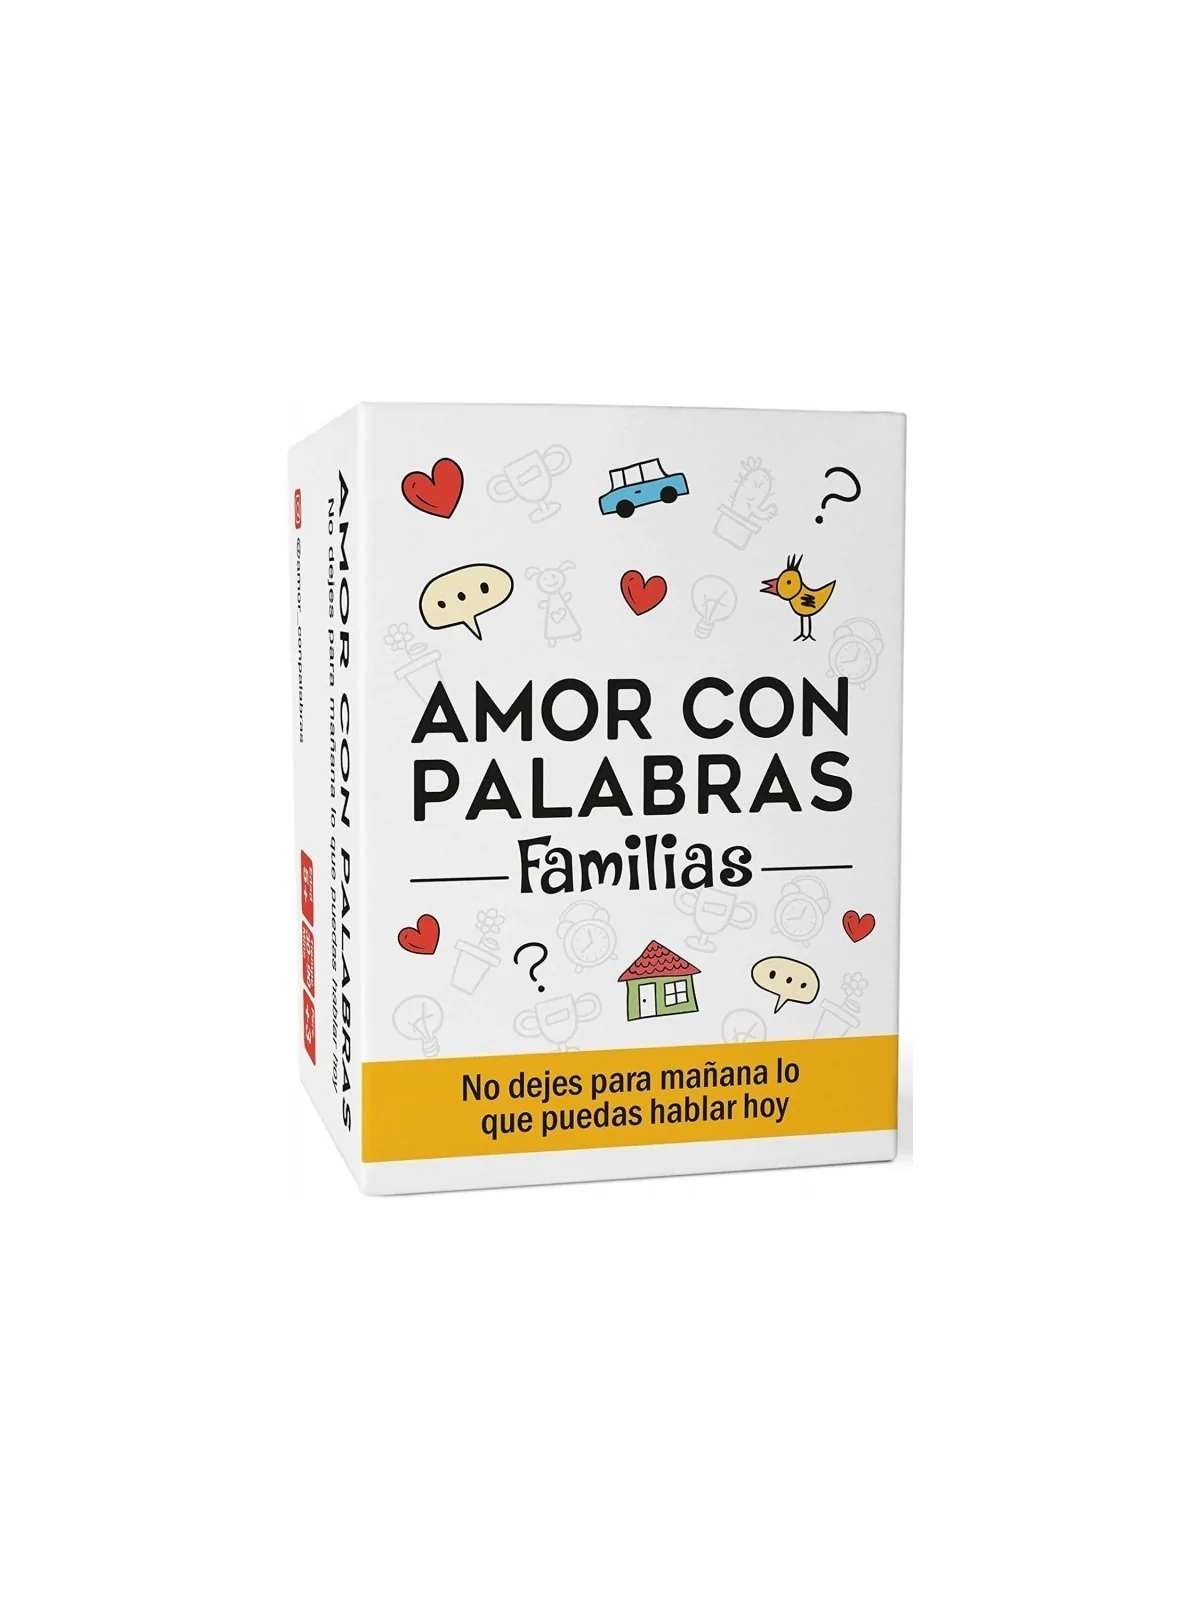 Comprar Amor con Palabras: Familia barato al mejor precio 17,95 € de J